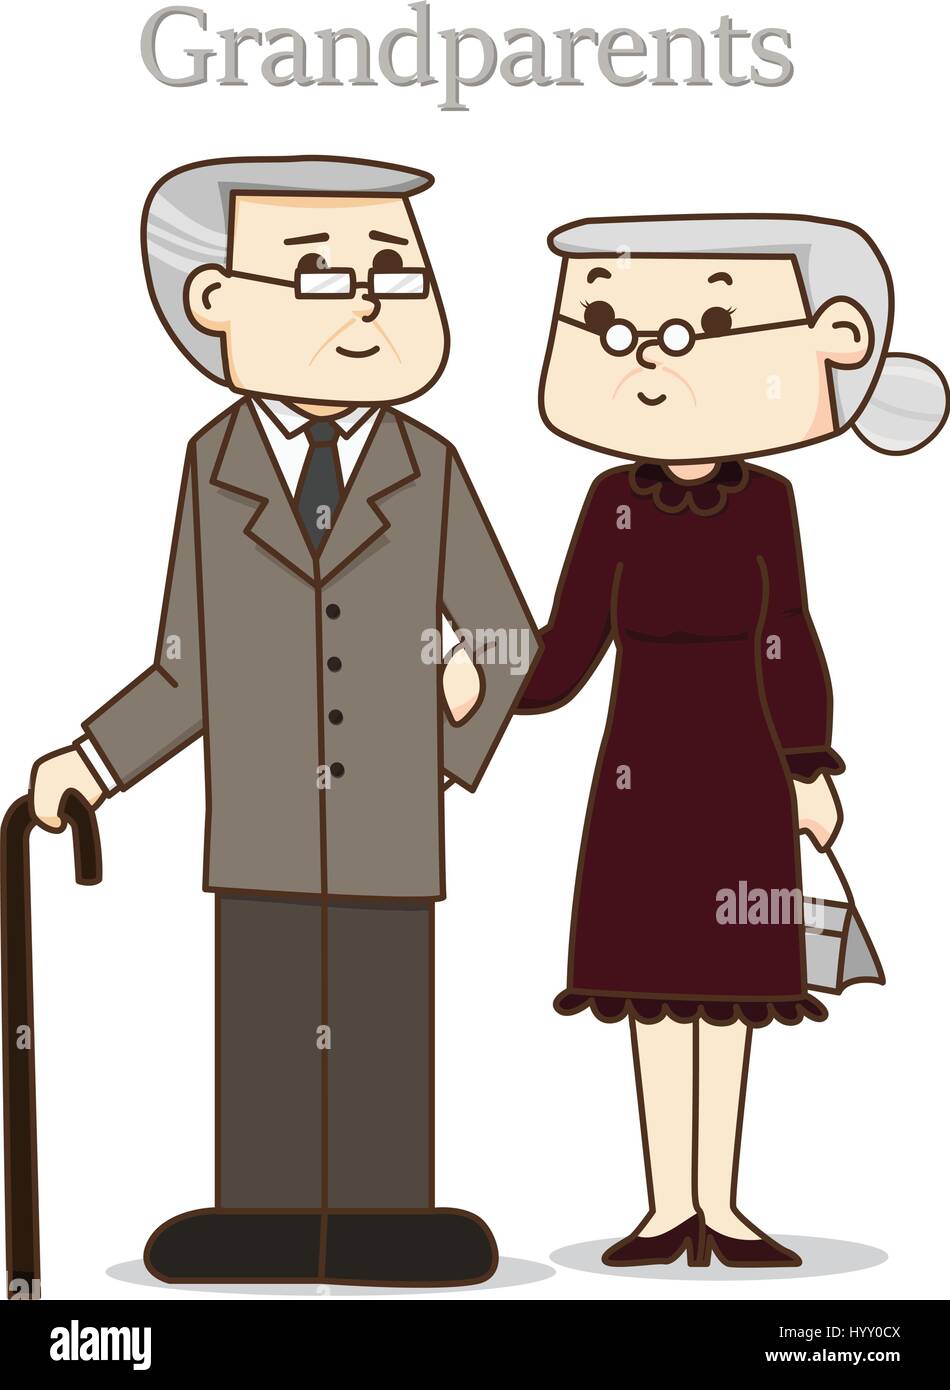 Frohen Tag der Großeltern. Vektor-Illustration. Opa und Oma in Abendkleidung Anzug. Alte Paare Liebe. Stock Vektor